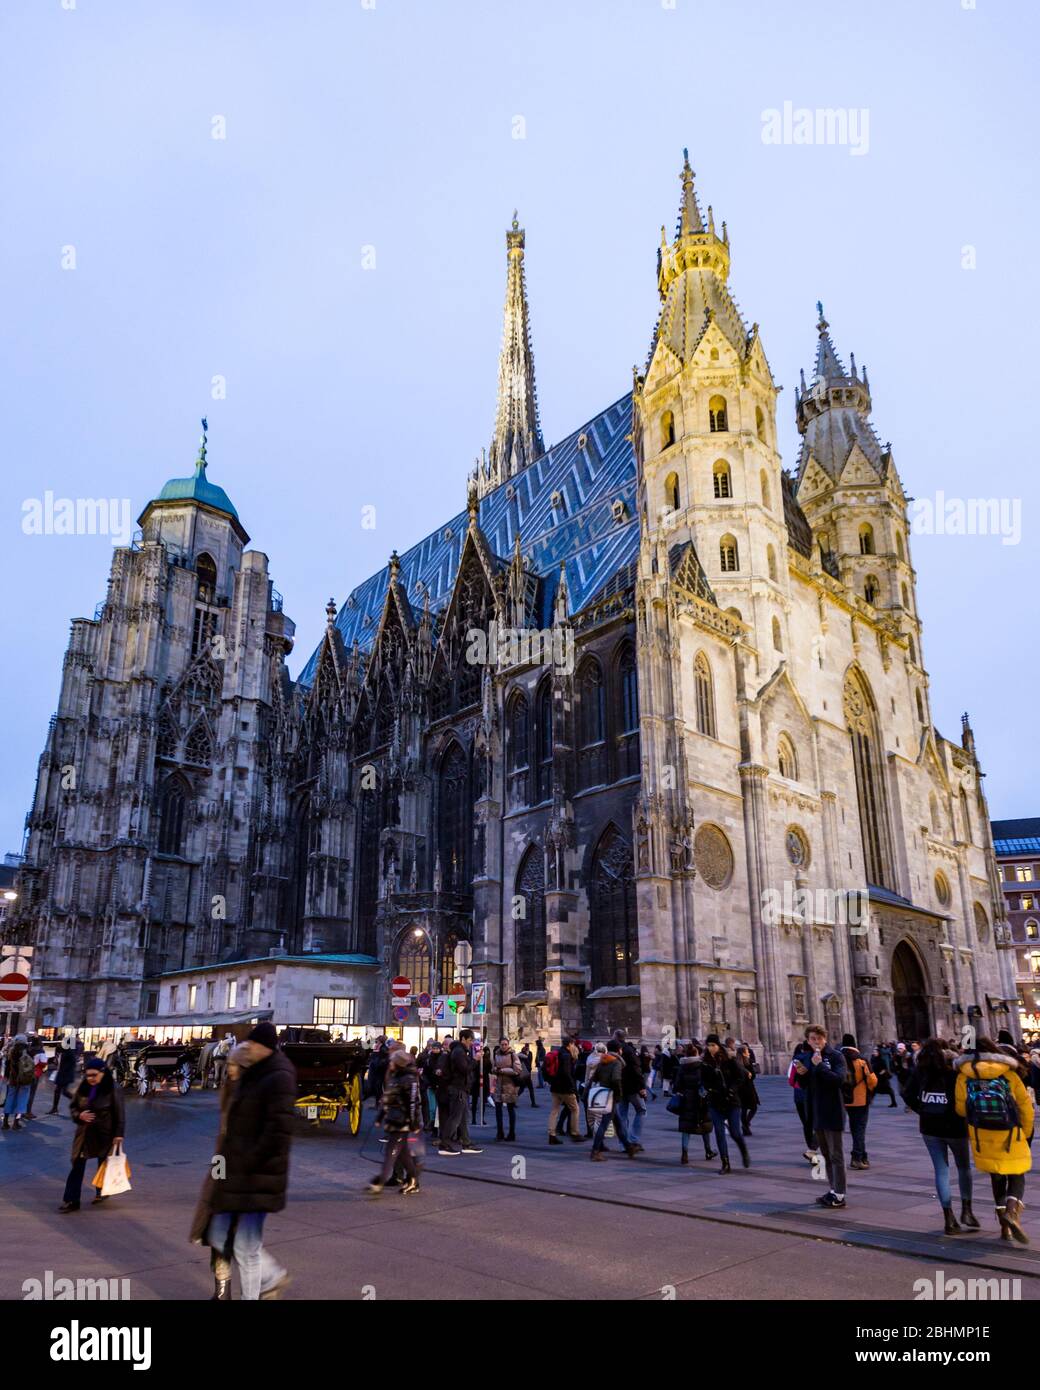 La magnifica Cattedrale di Santo Stefano a Vienna. Risalente al 1137, è un capolavoro architettonico del Medioevo. Foto Stock